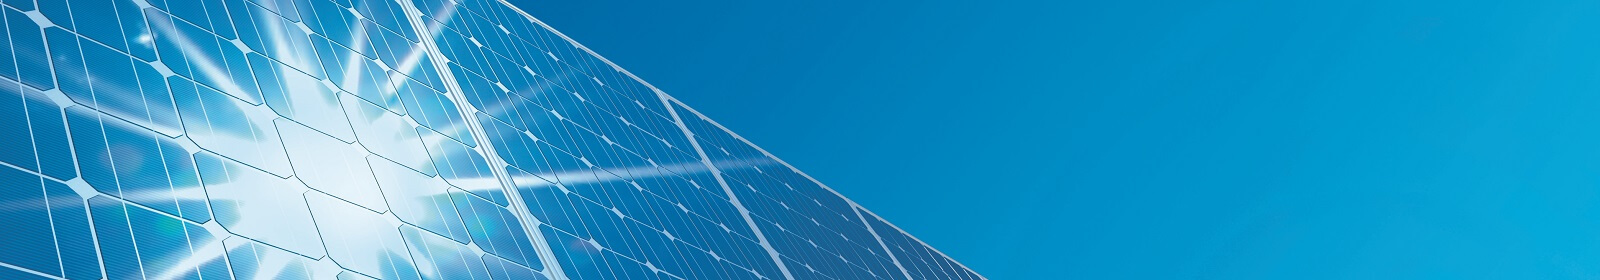 Solar power pannels  - renewable energy sources for Telecoms